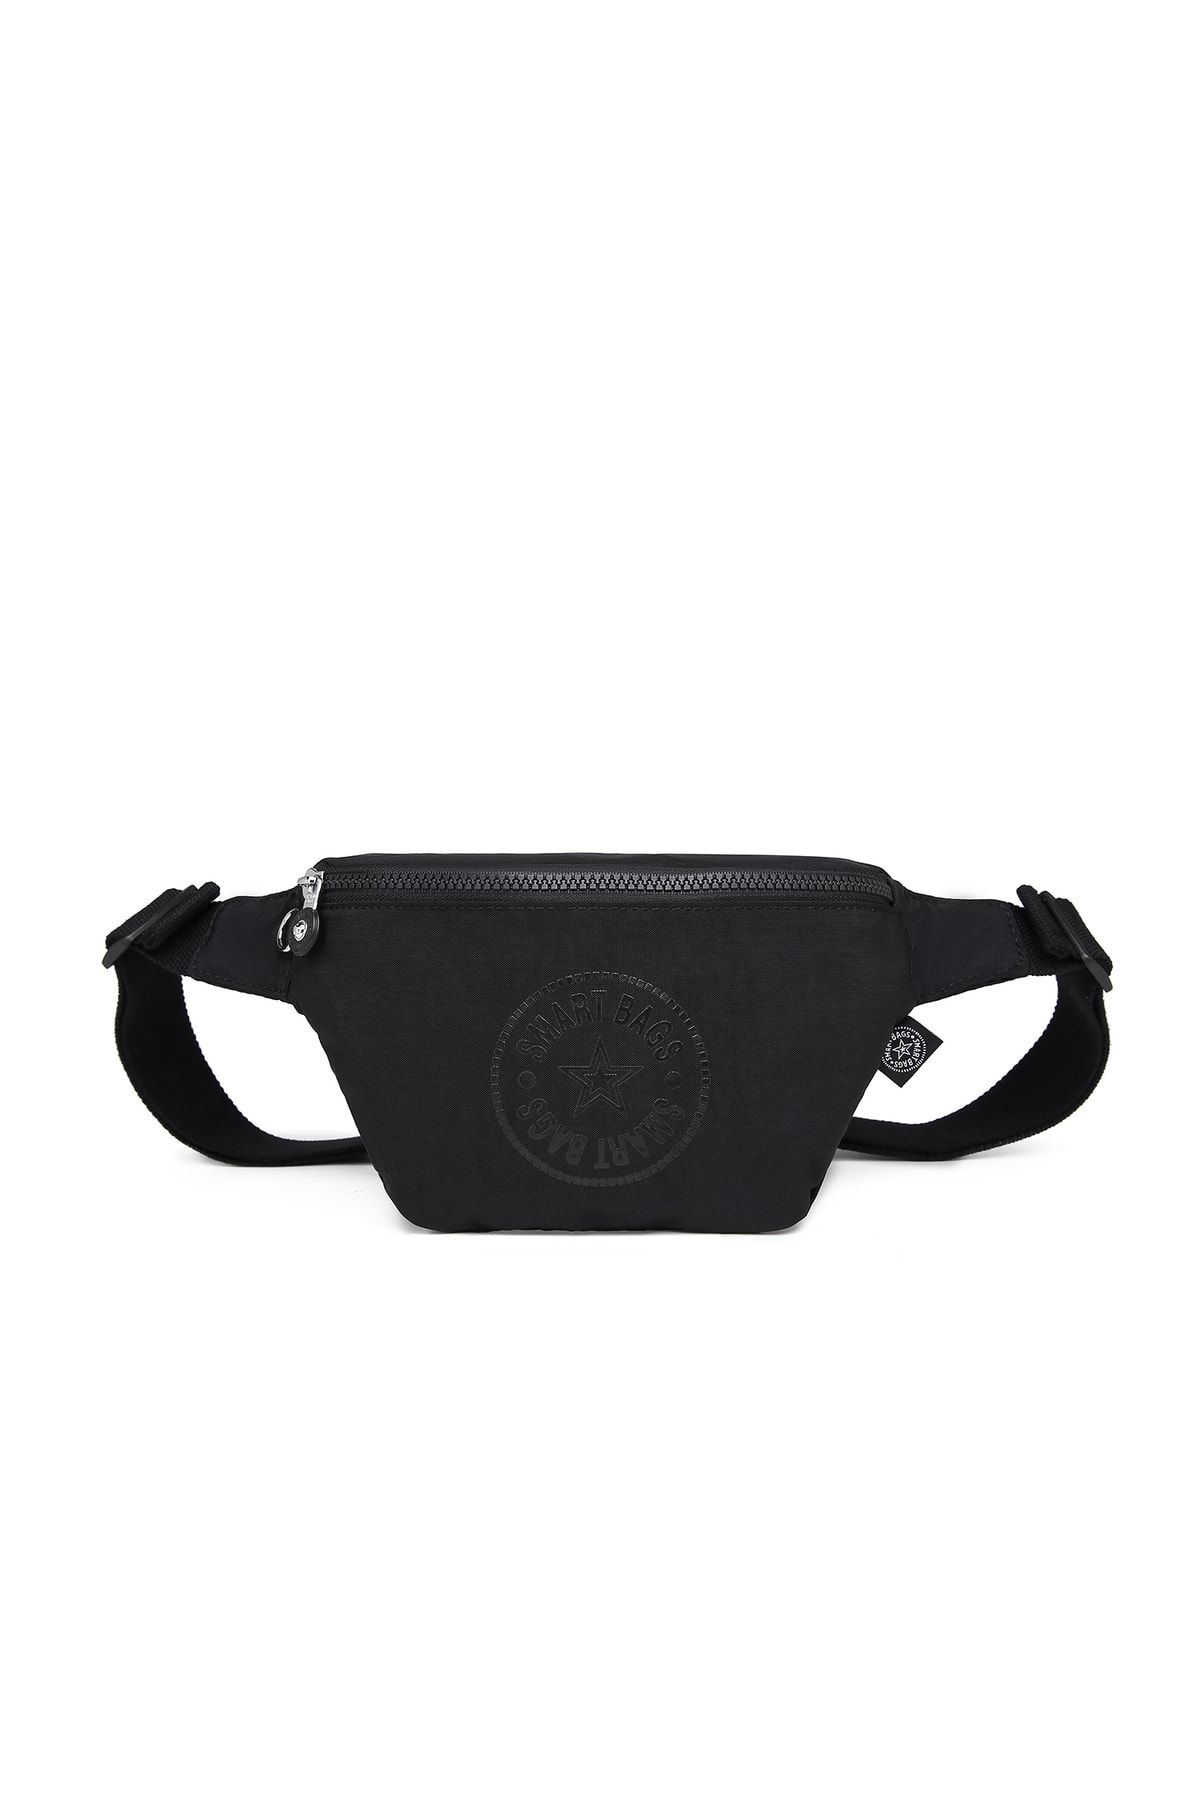 Smart Bags Bodybag Kadın Bel Çantası Krinkıl Kumaş 3099 Siyah